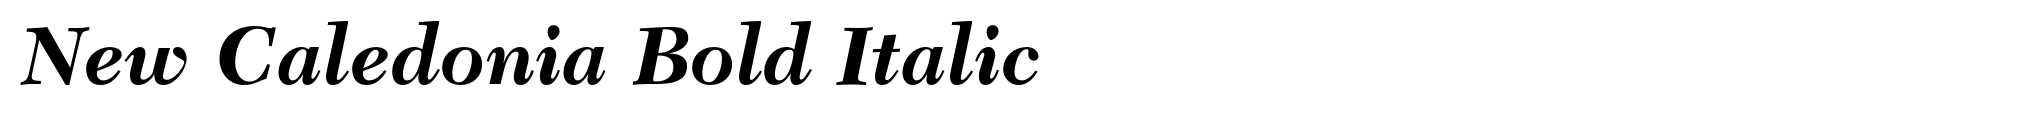 New Caledonia Bold Italic image